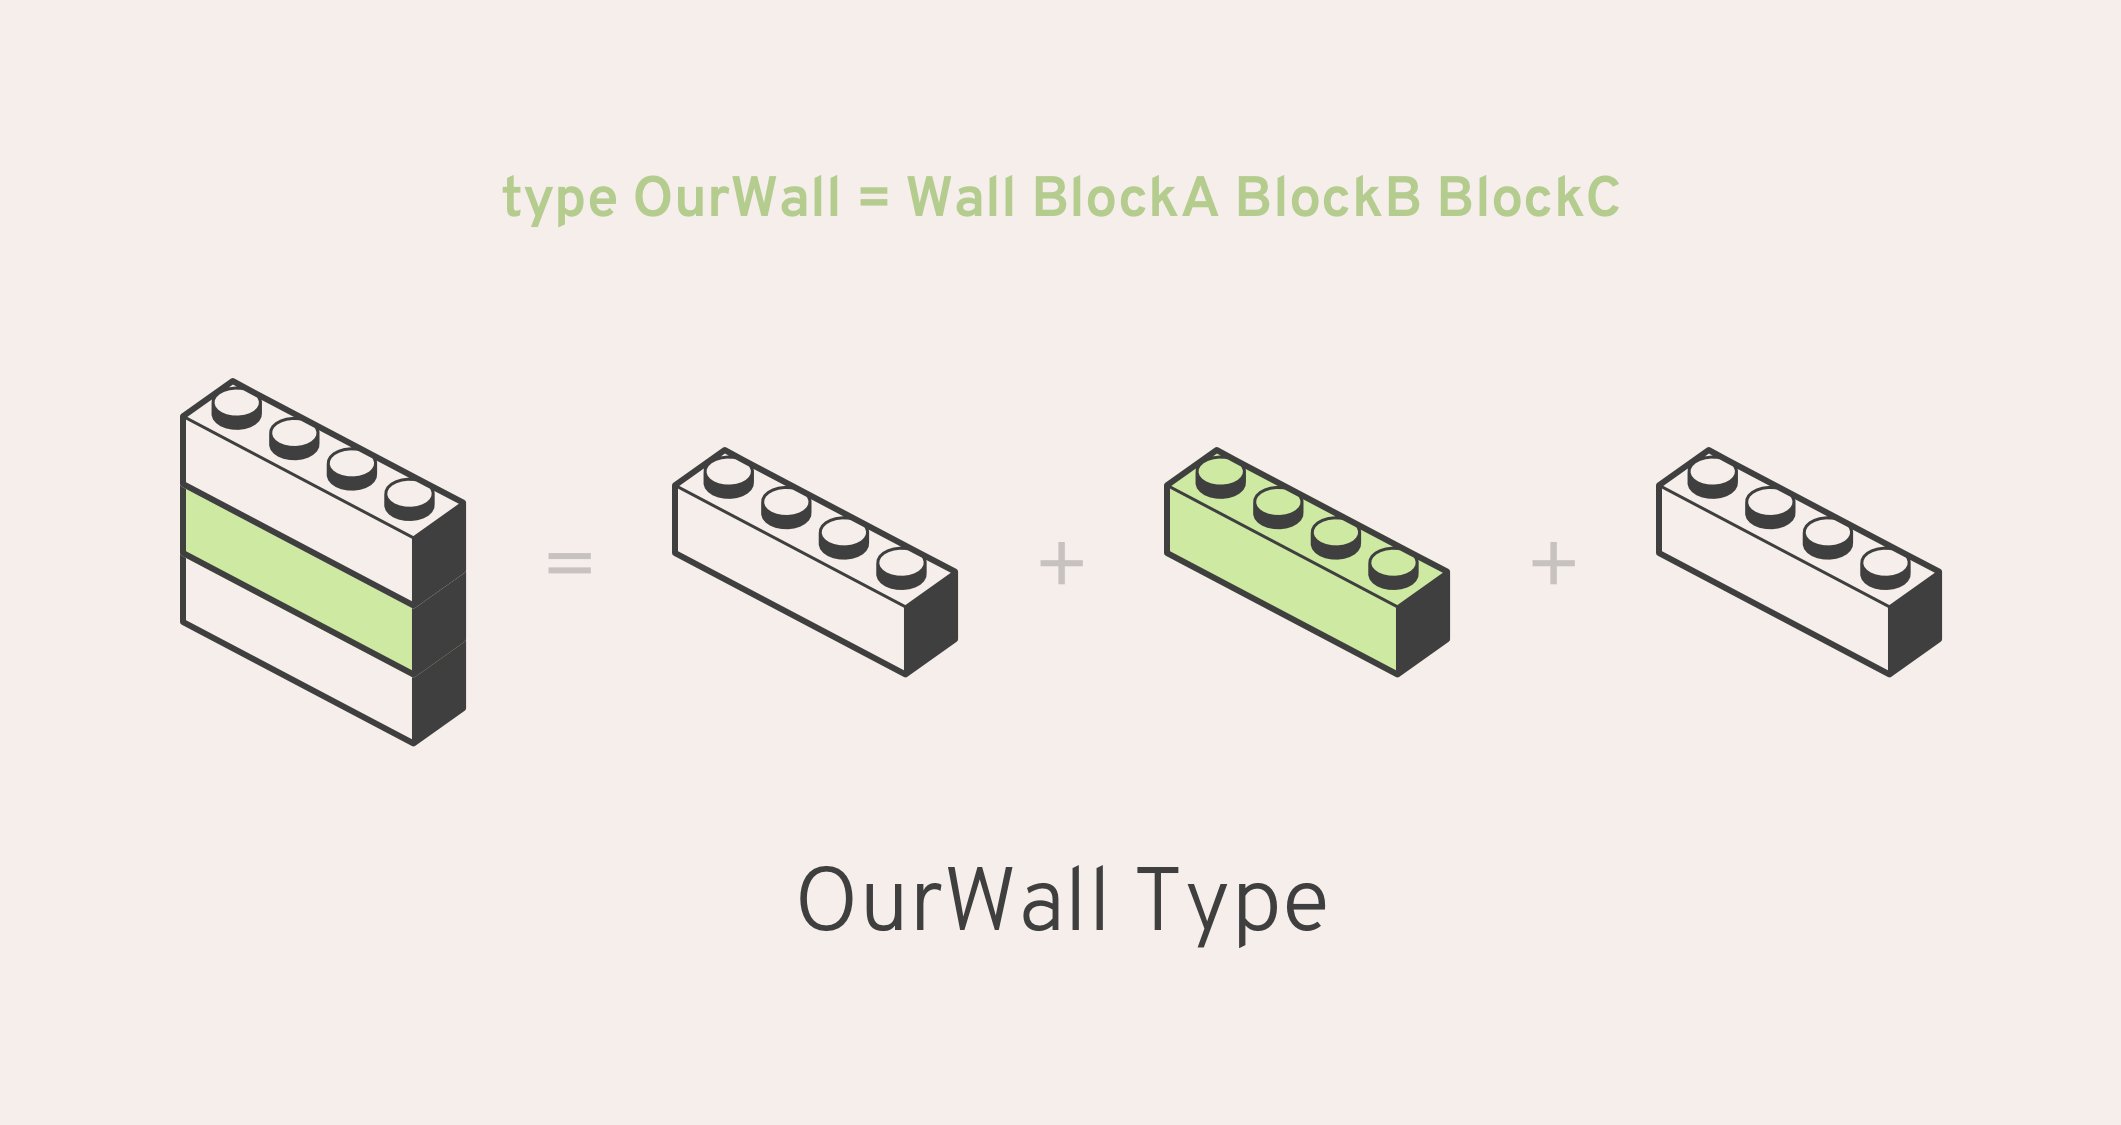 type OurWall = Wall BlockA BlockB BlockC